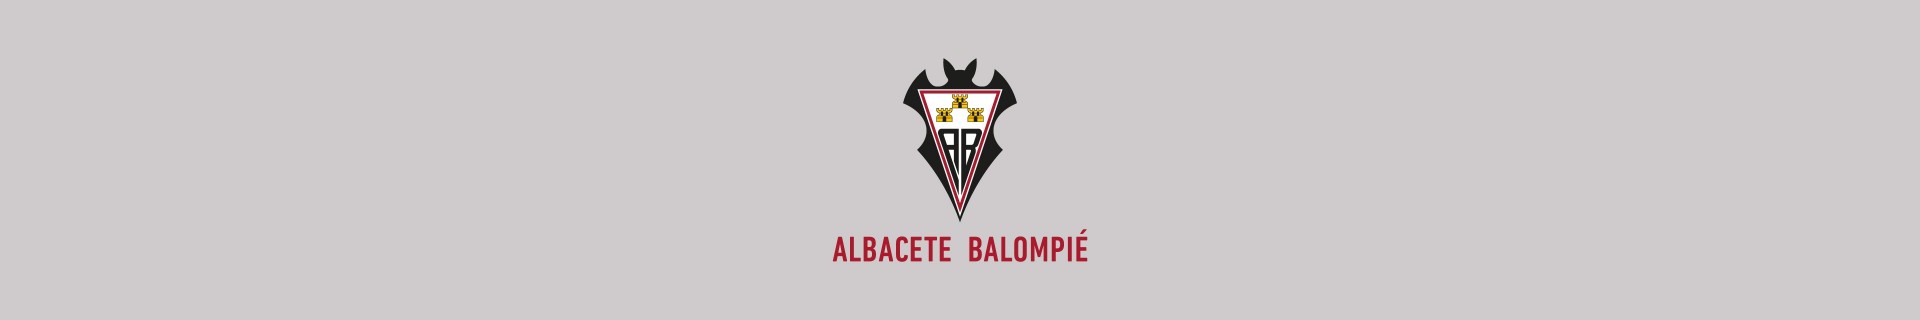 Calcetines del Albacete Balompié